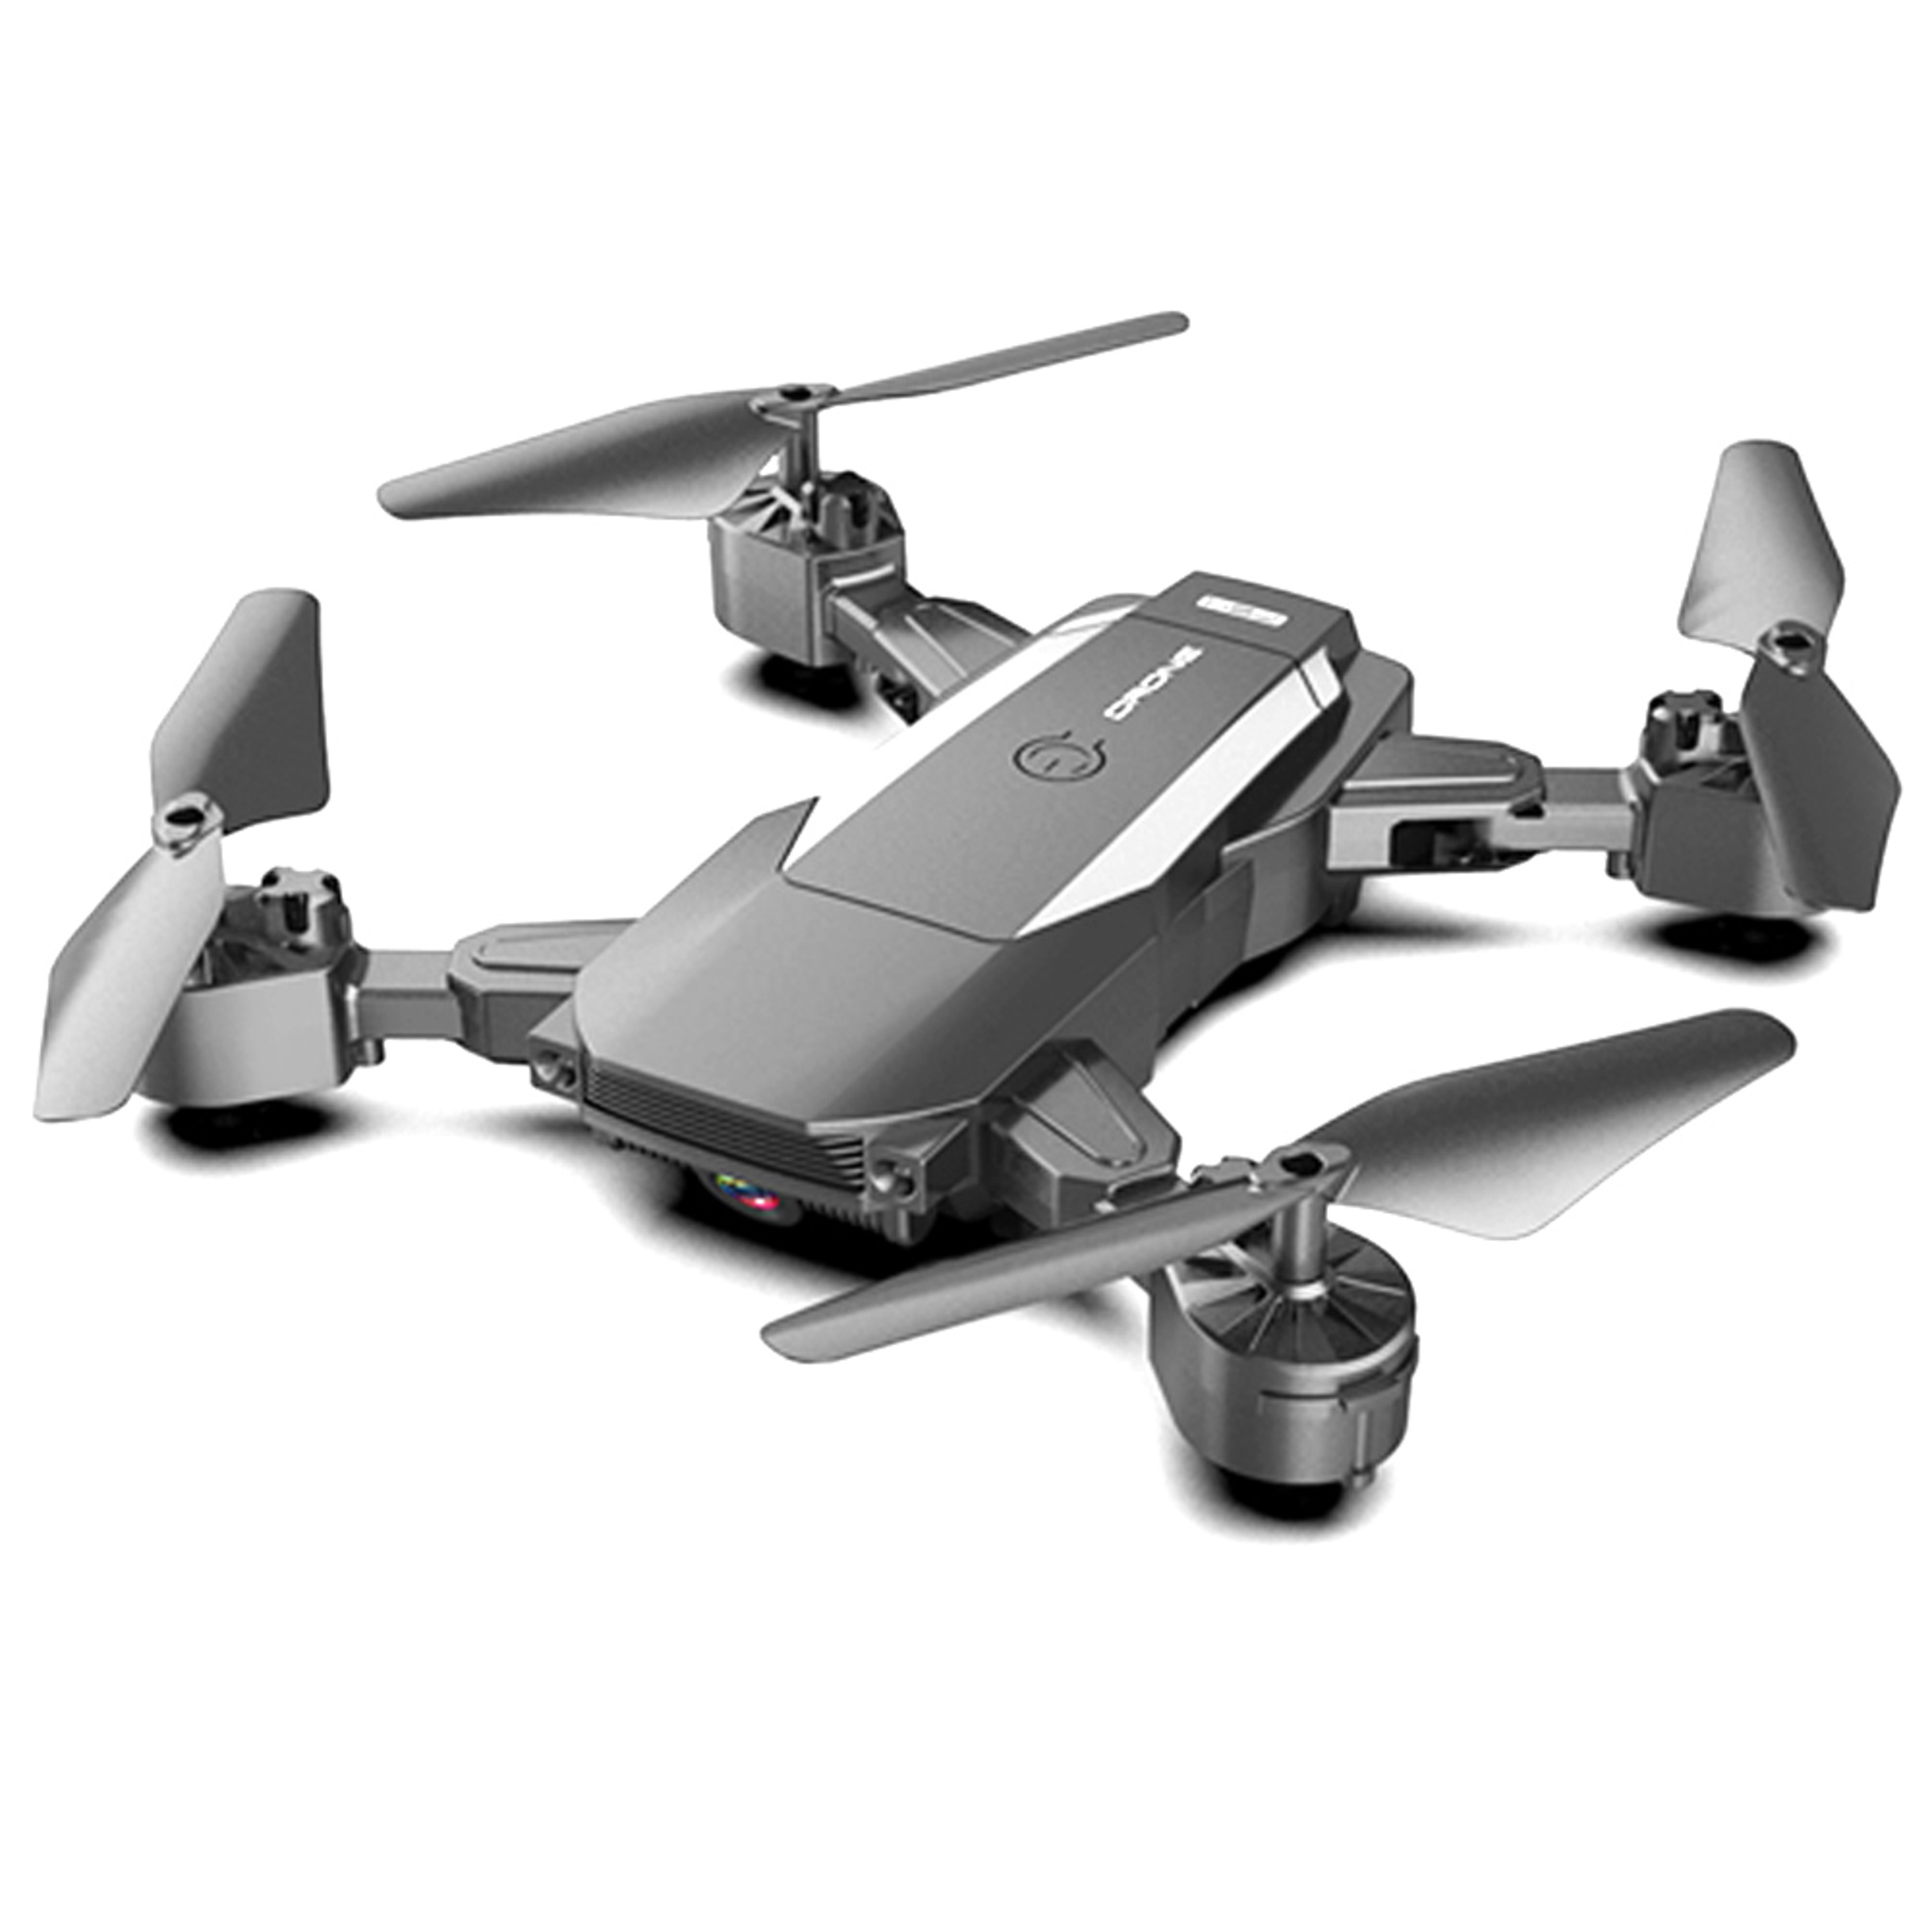 Dron Con Camara Hd Funcion Retorno Klack - negro - 